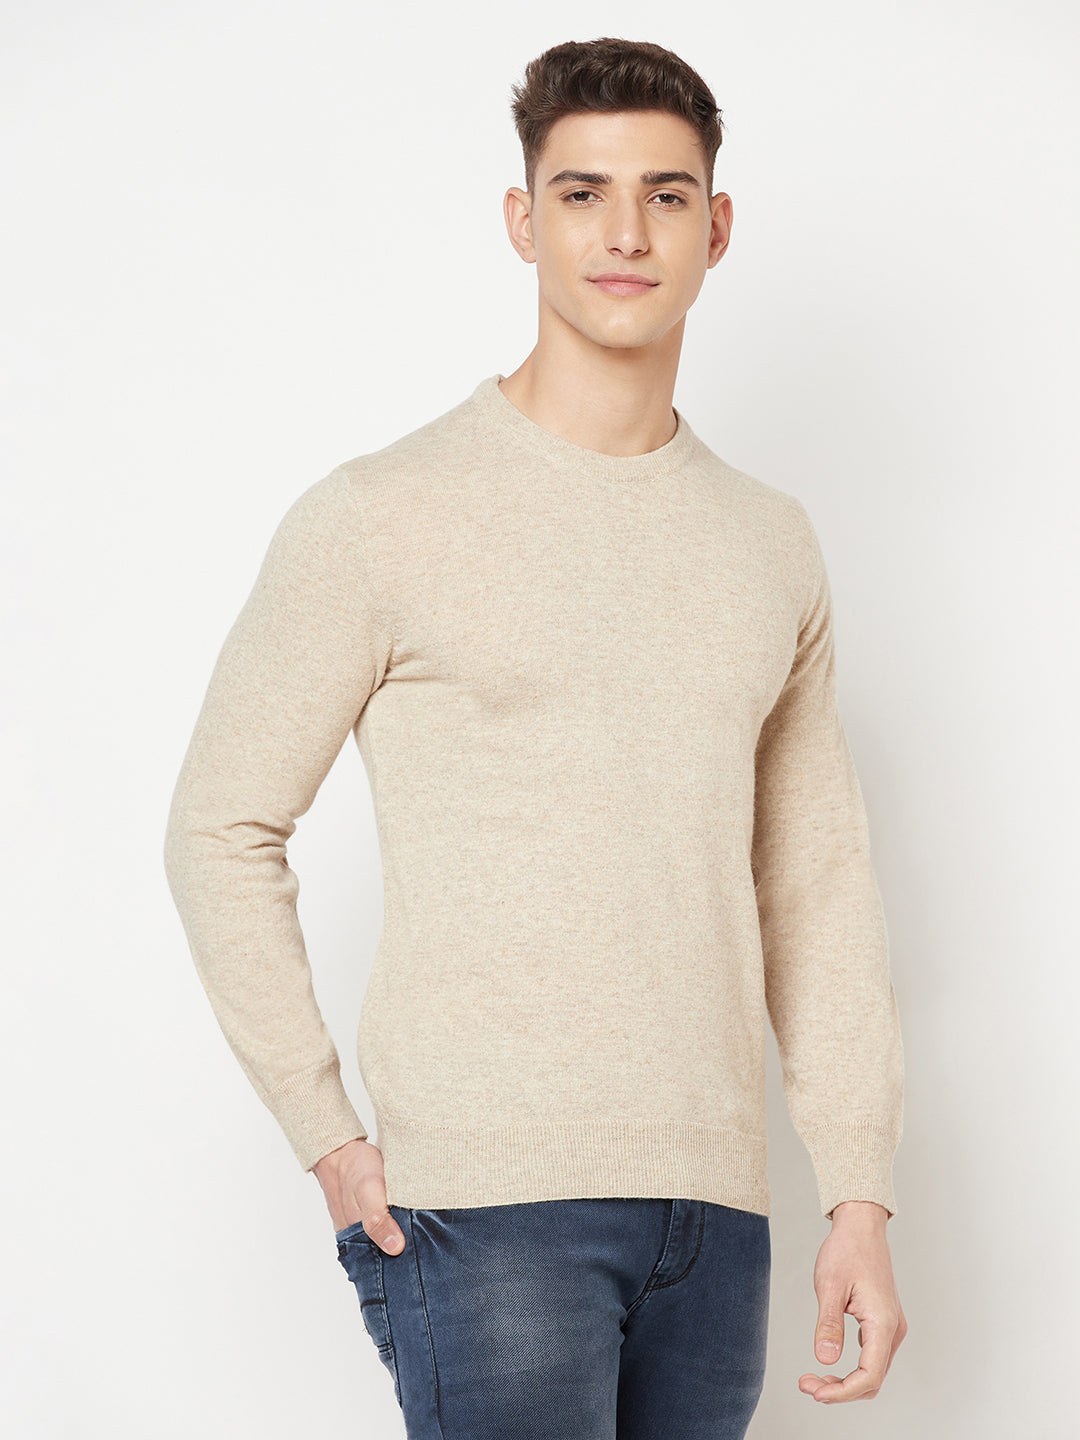 Beige Round Neck Sweater - Men Sweaters